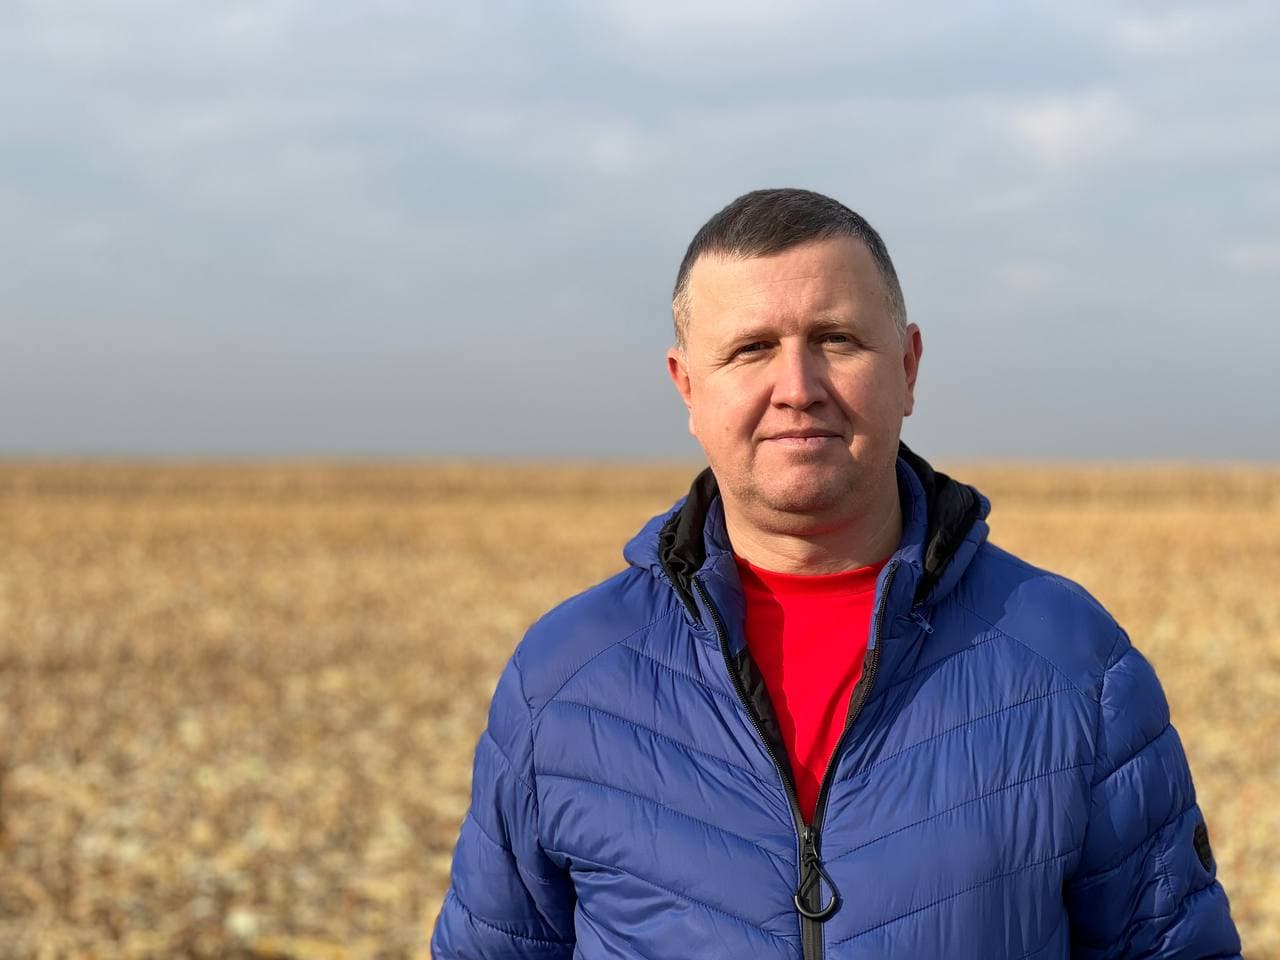 Віталій Брашован, менеджер із розвитку агротехнологій компанії LNZ Group у Північно-Східних регіонах